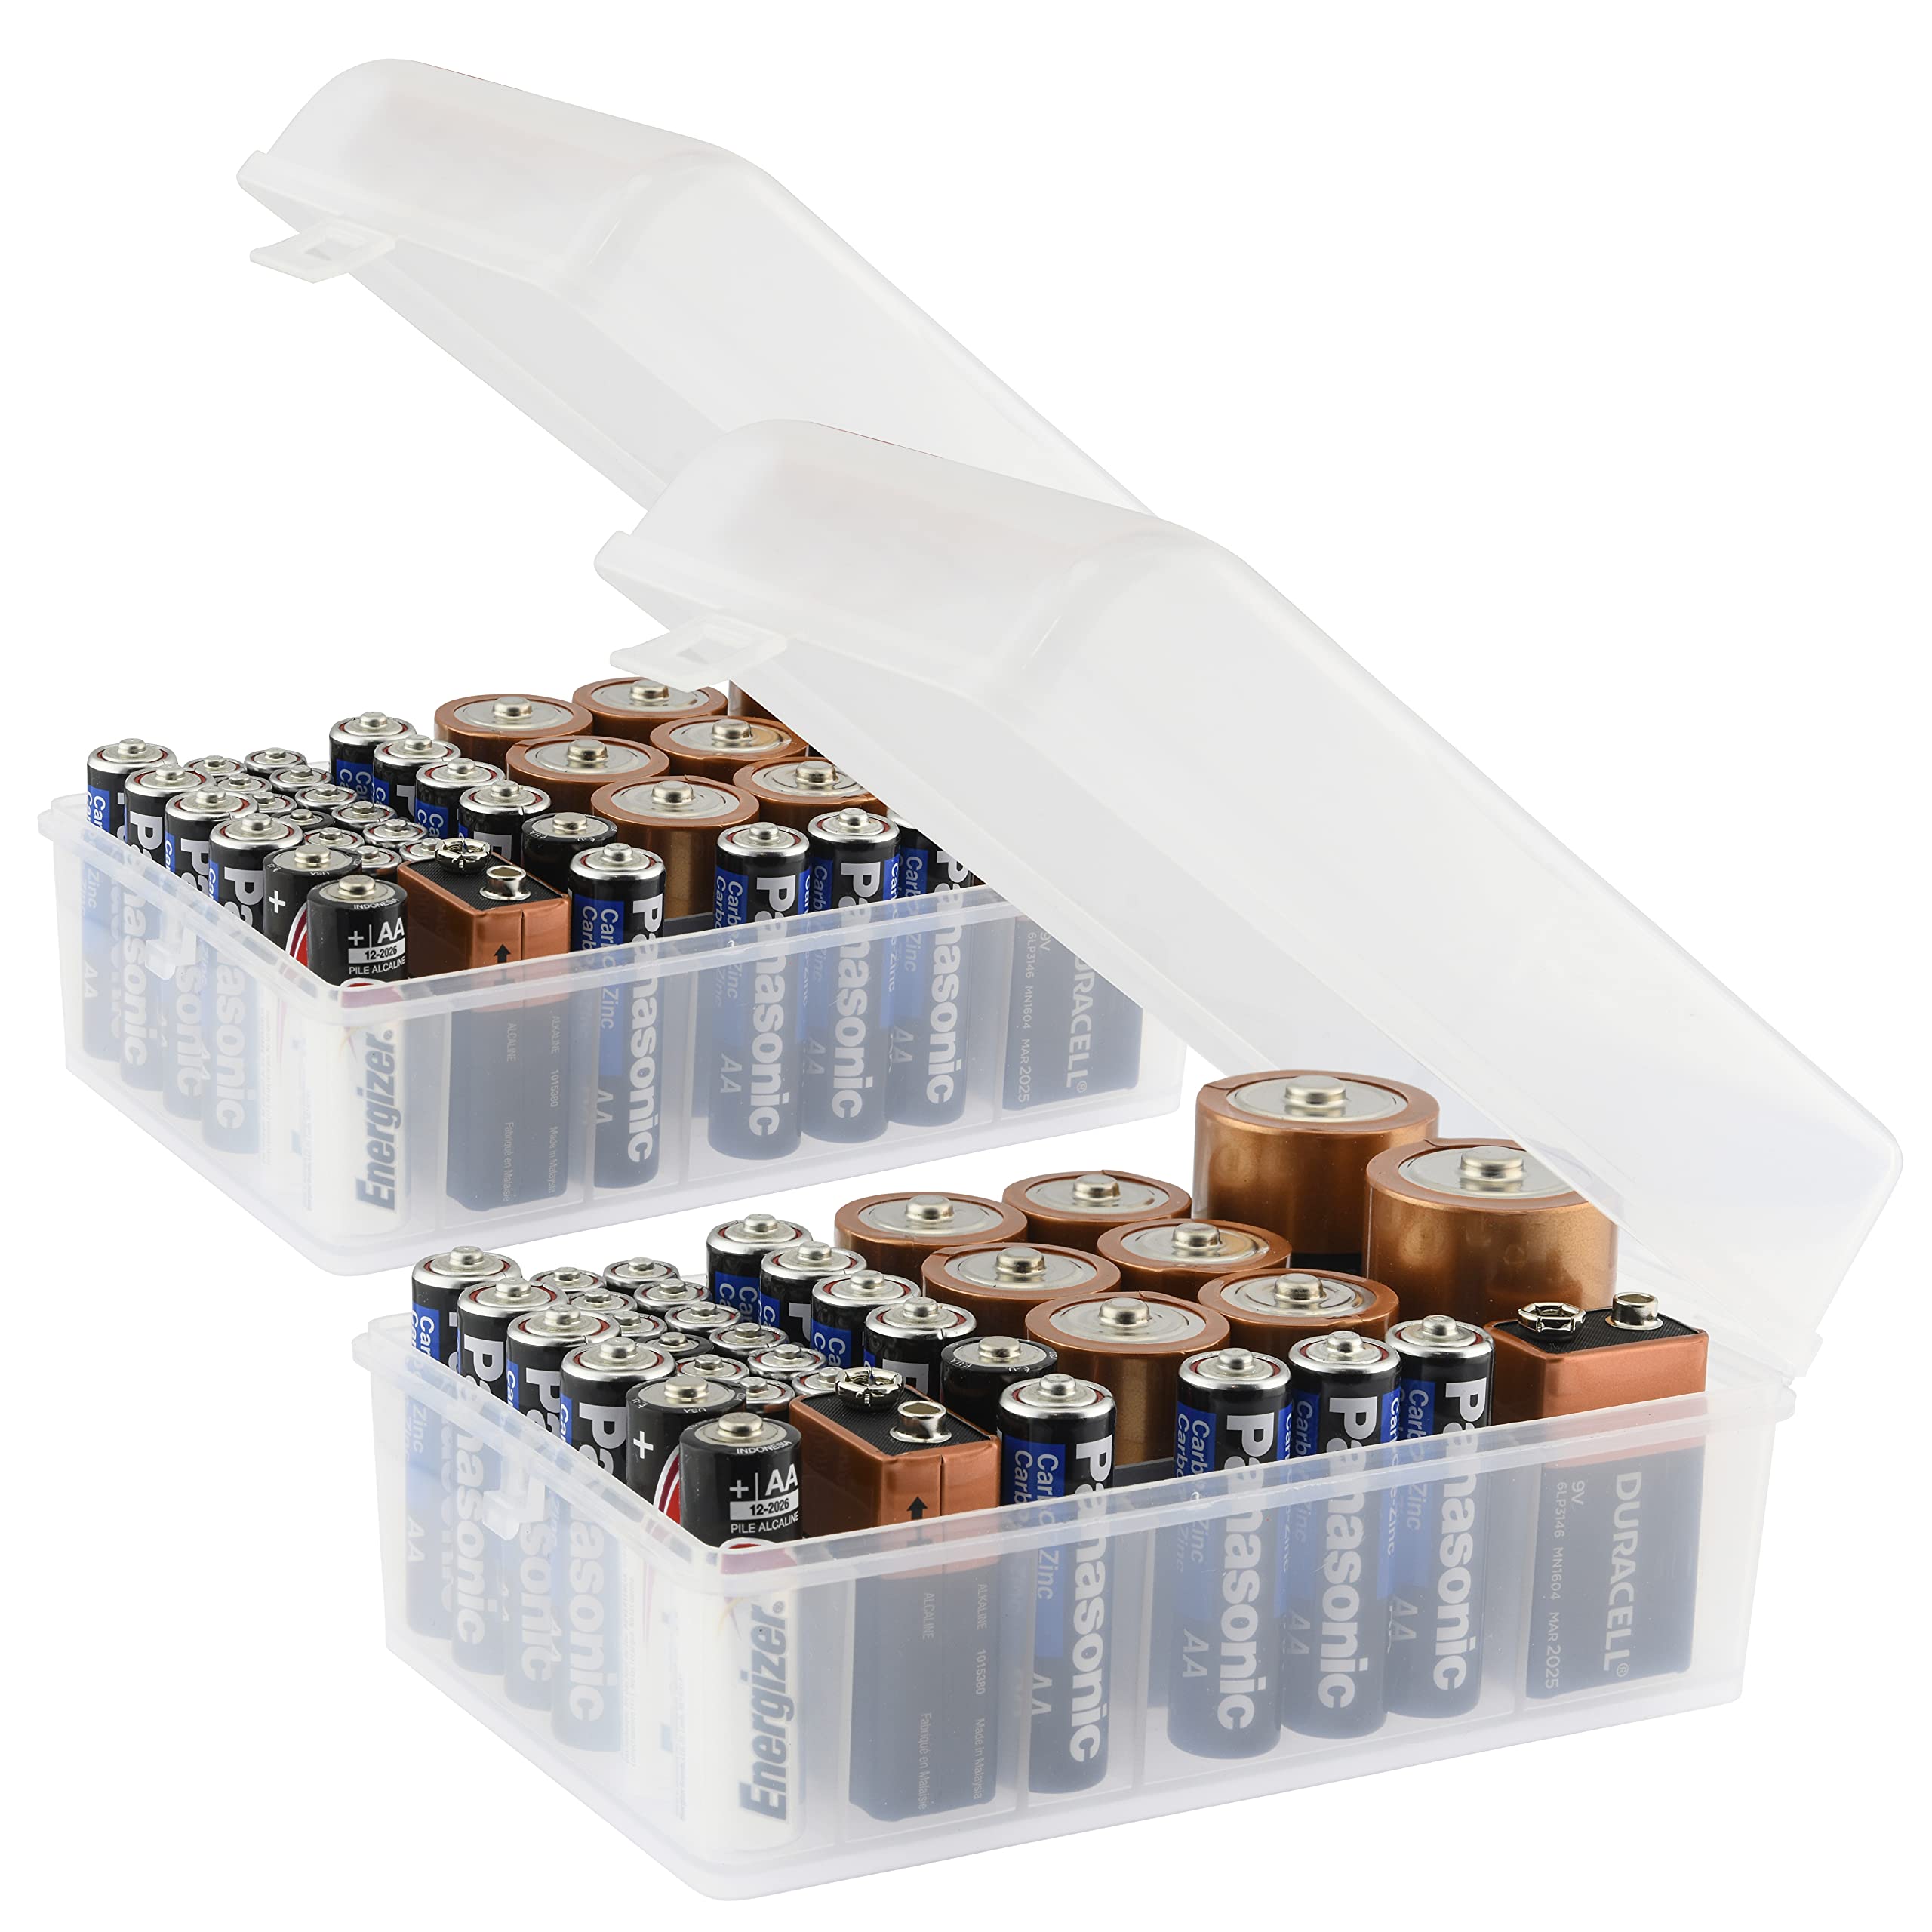 Box Multi inkl. Tester Battery box 72x AAA, AA, C, D, 9V PP3, CR 927, CR2032, LR44 (L x W x H) 300 x 160 x